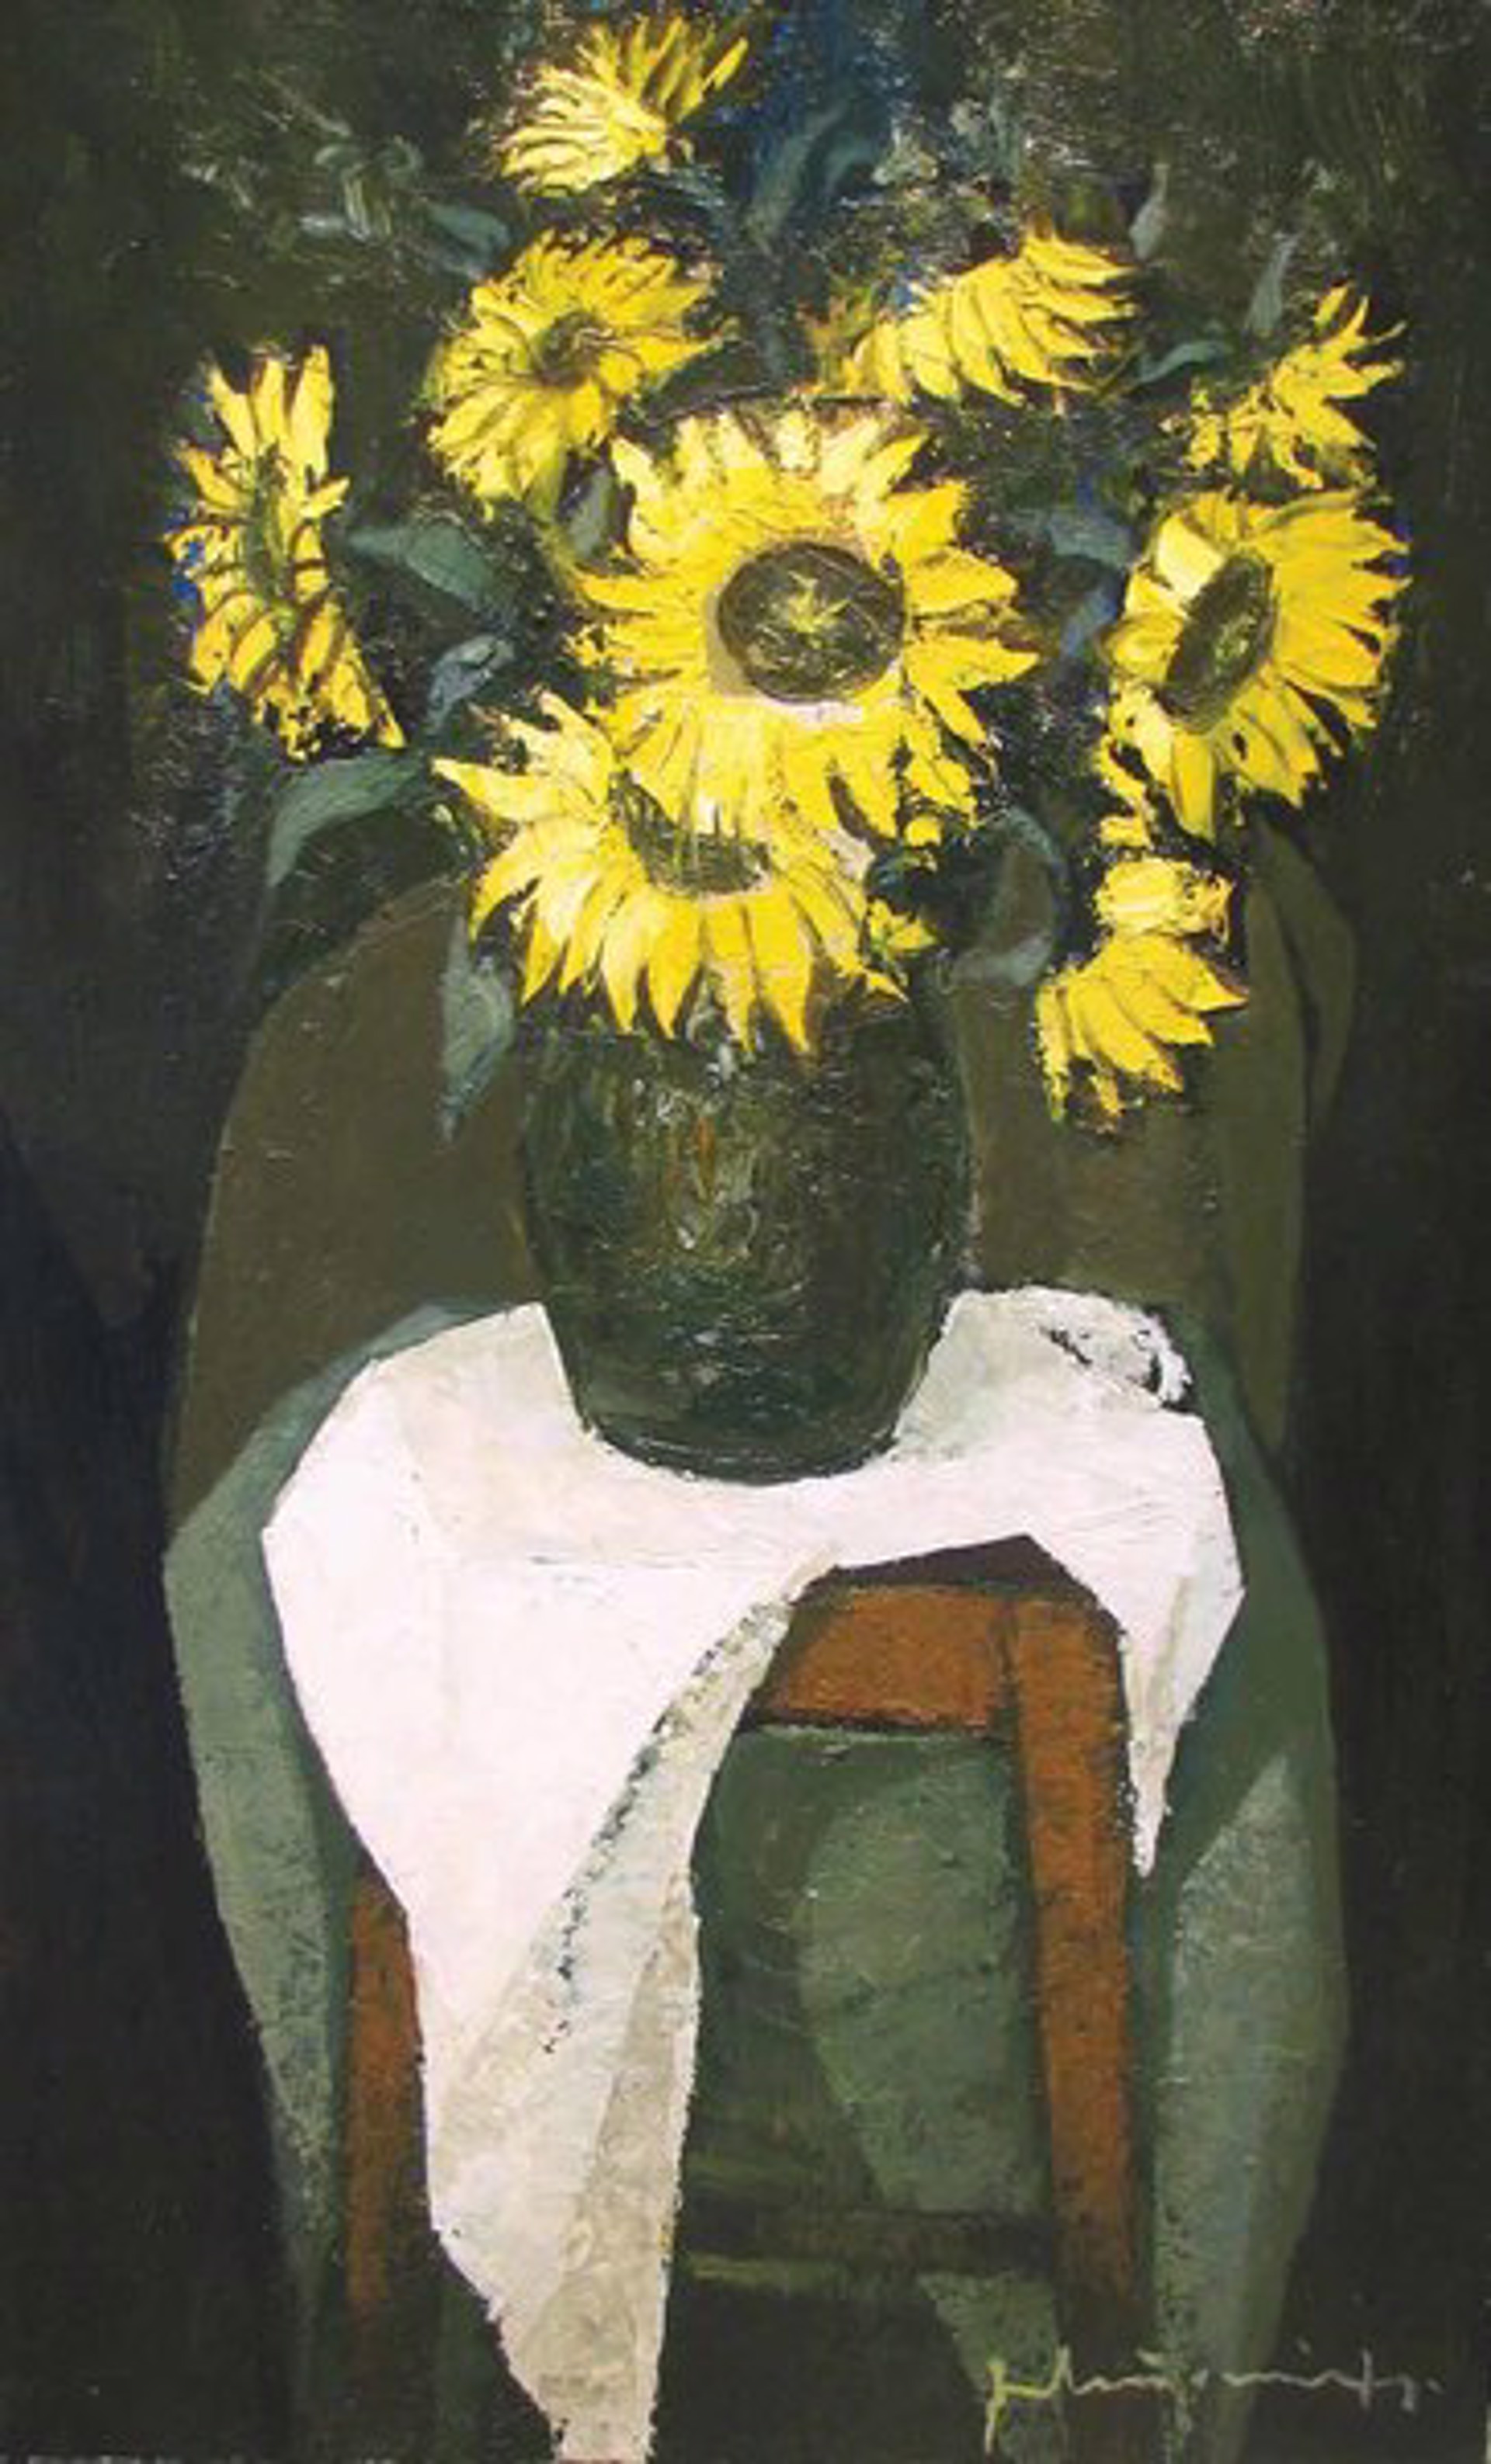 Sunflowers by Laimodot Murniek